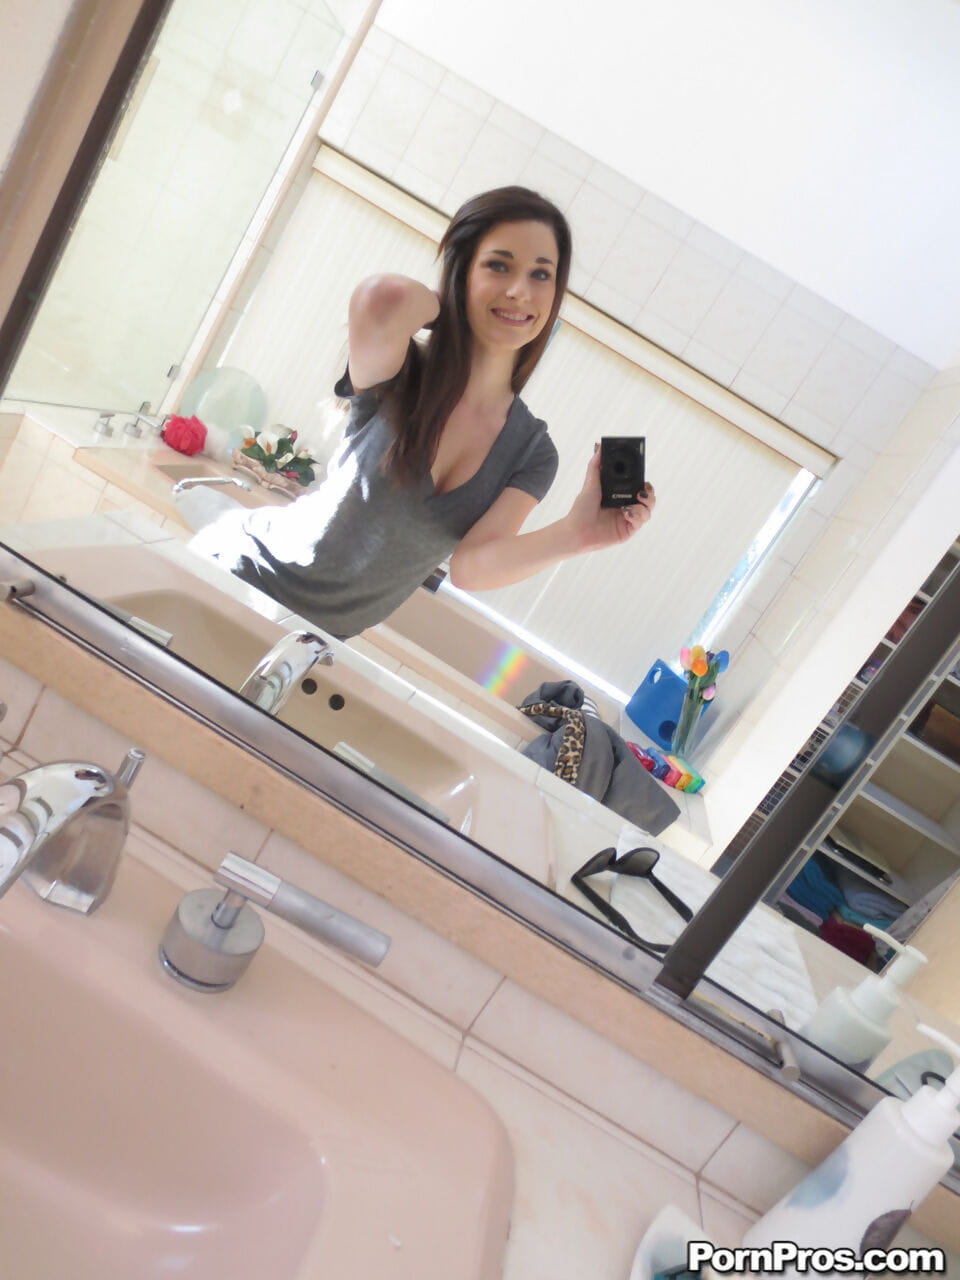 Lacey Channing pyszni jej naturalny cycki dostaje nagie i bierze sexy selfie